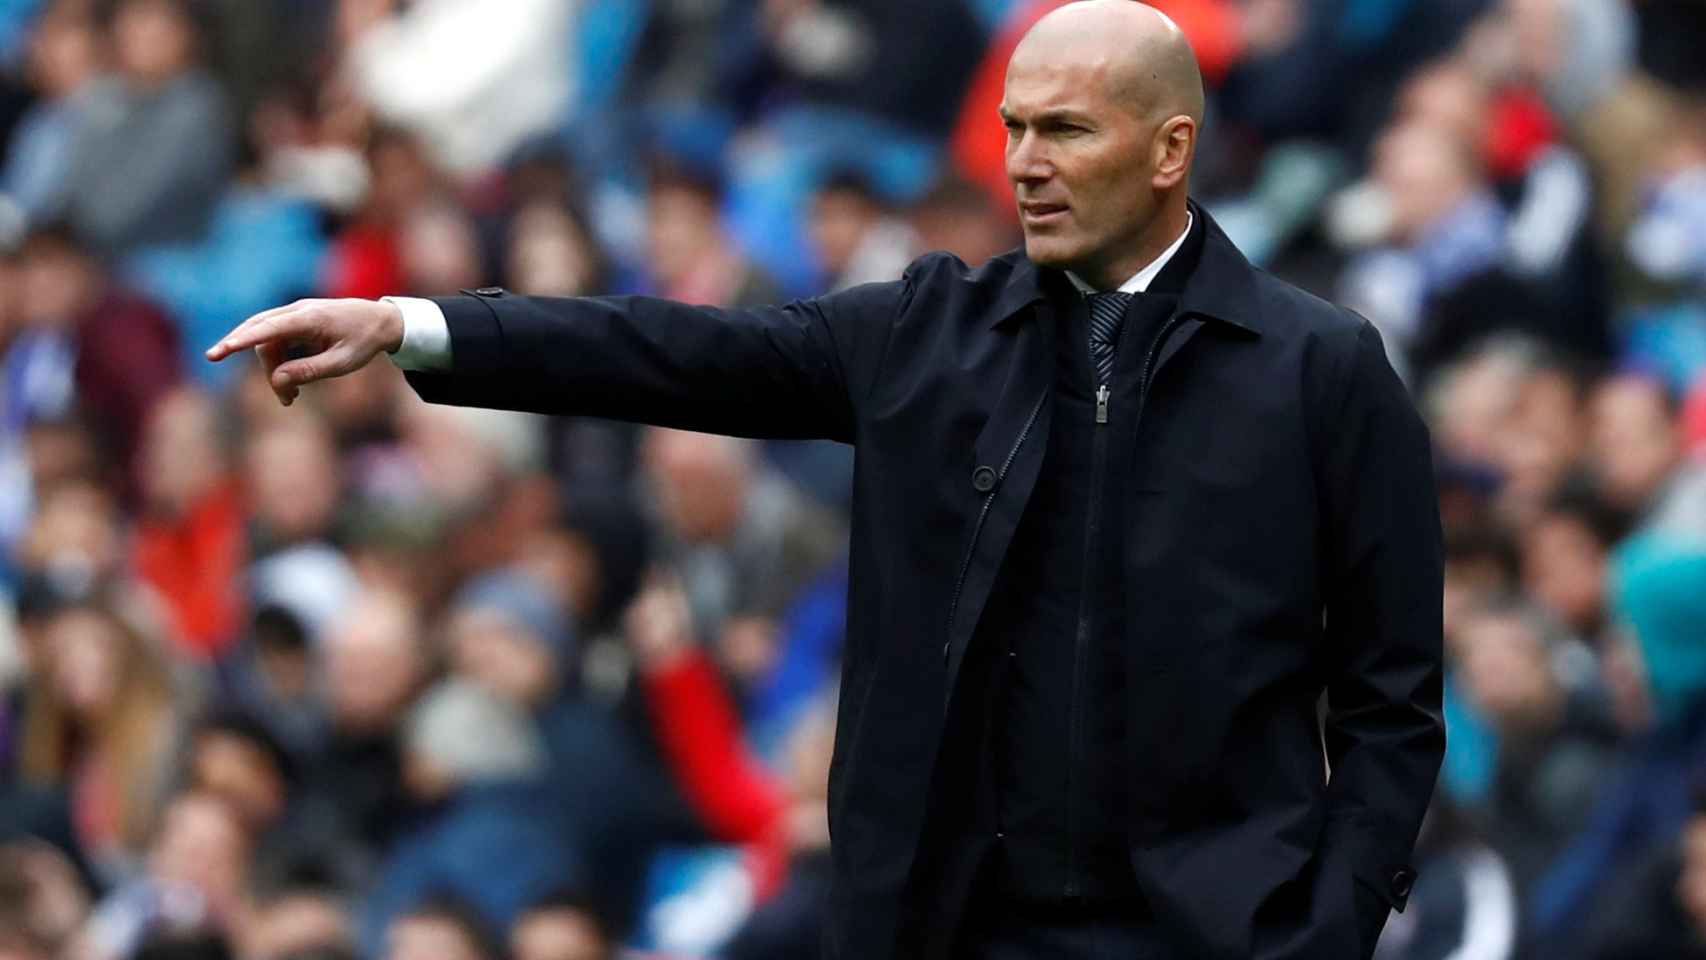 Zinedine Zidane da órdenes a los jugadores del Real Madrid desde la banda